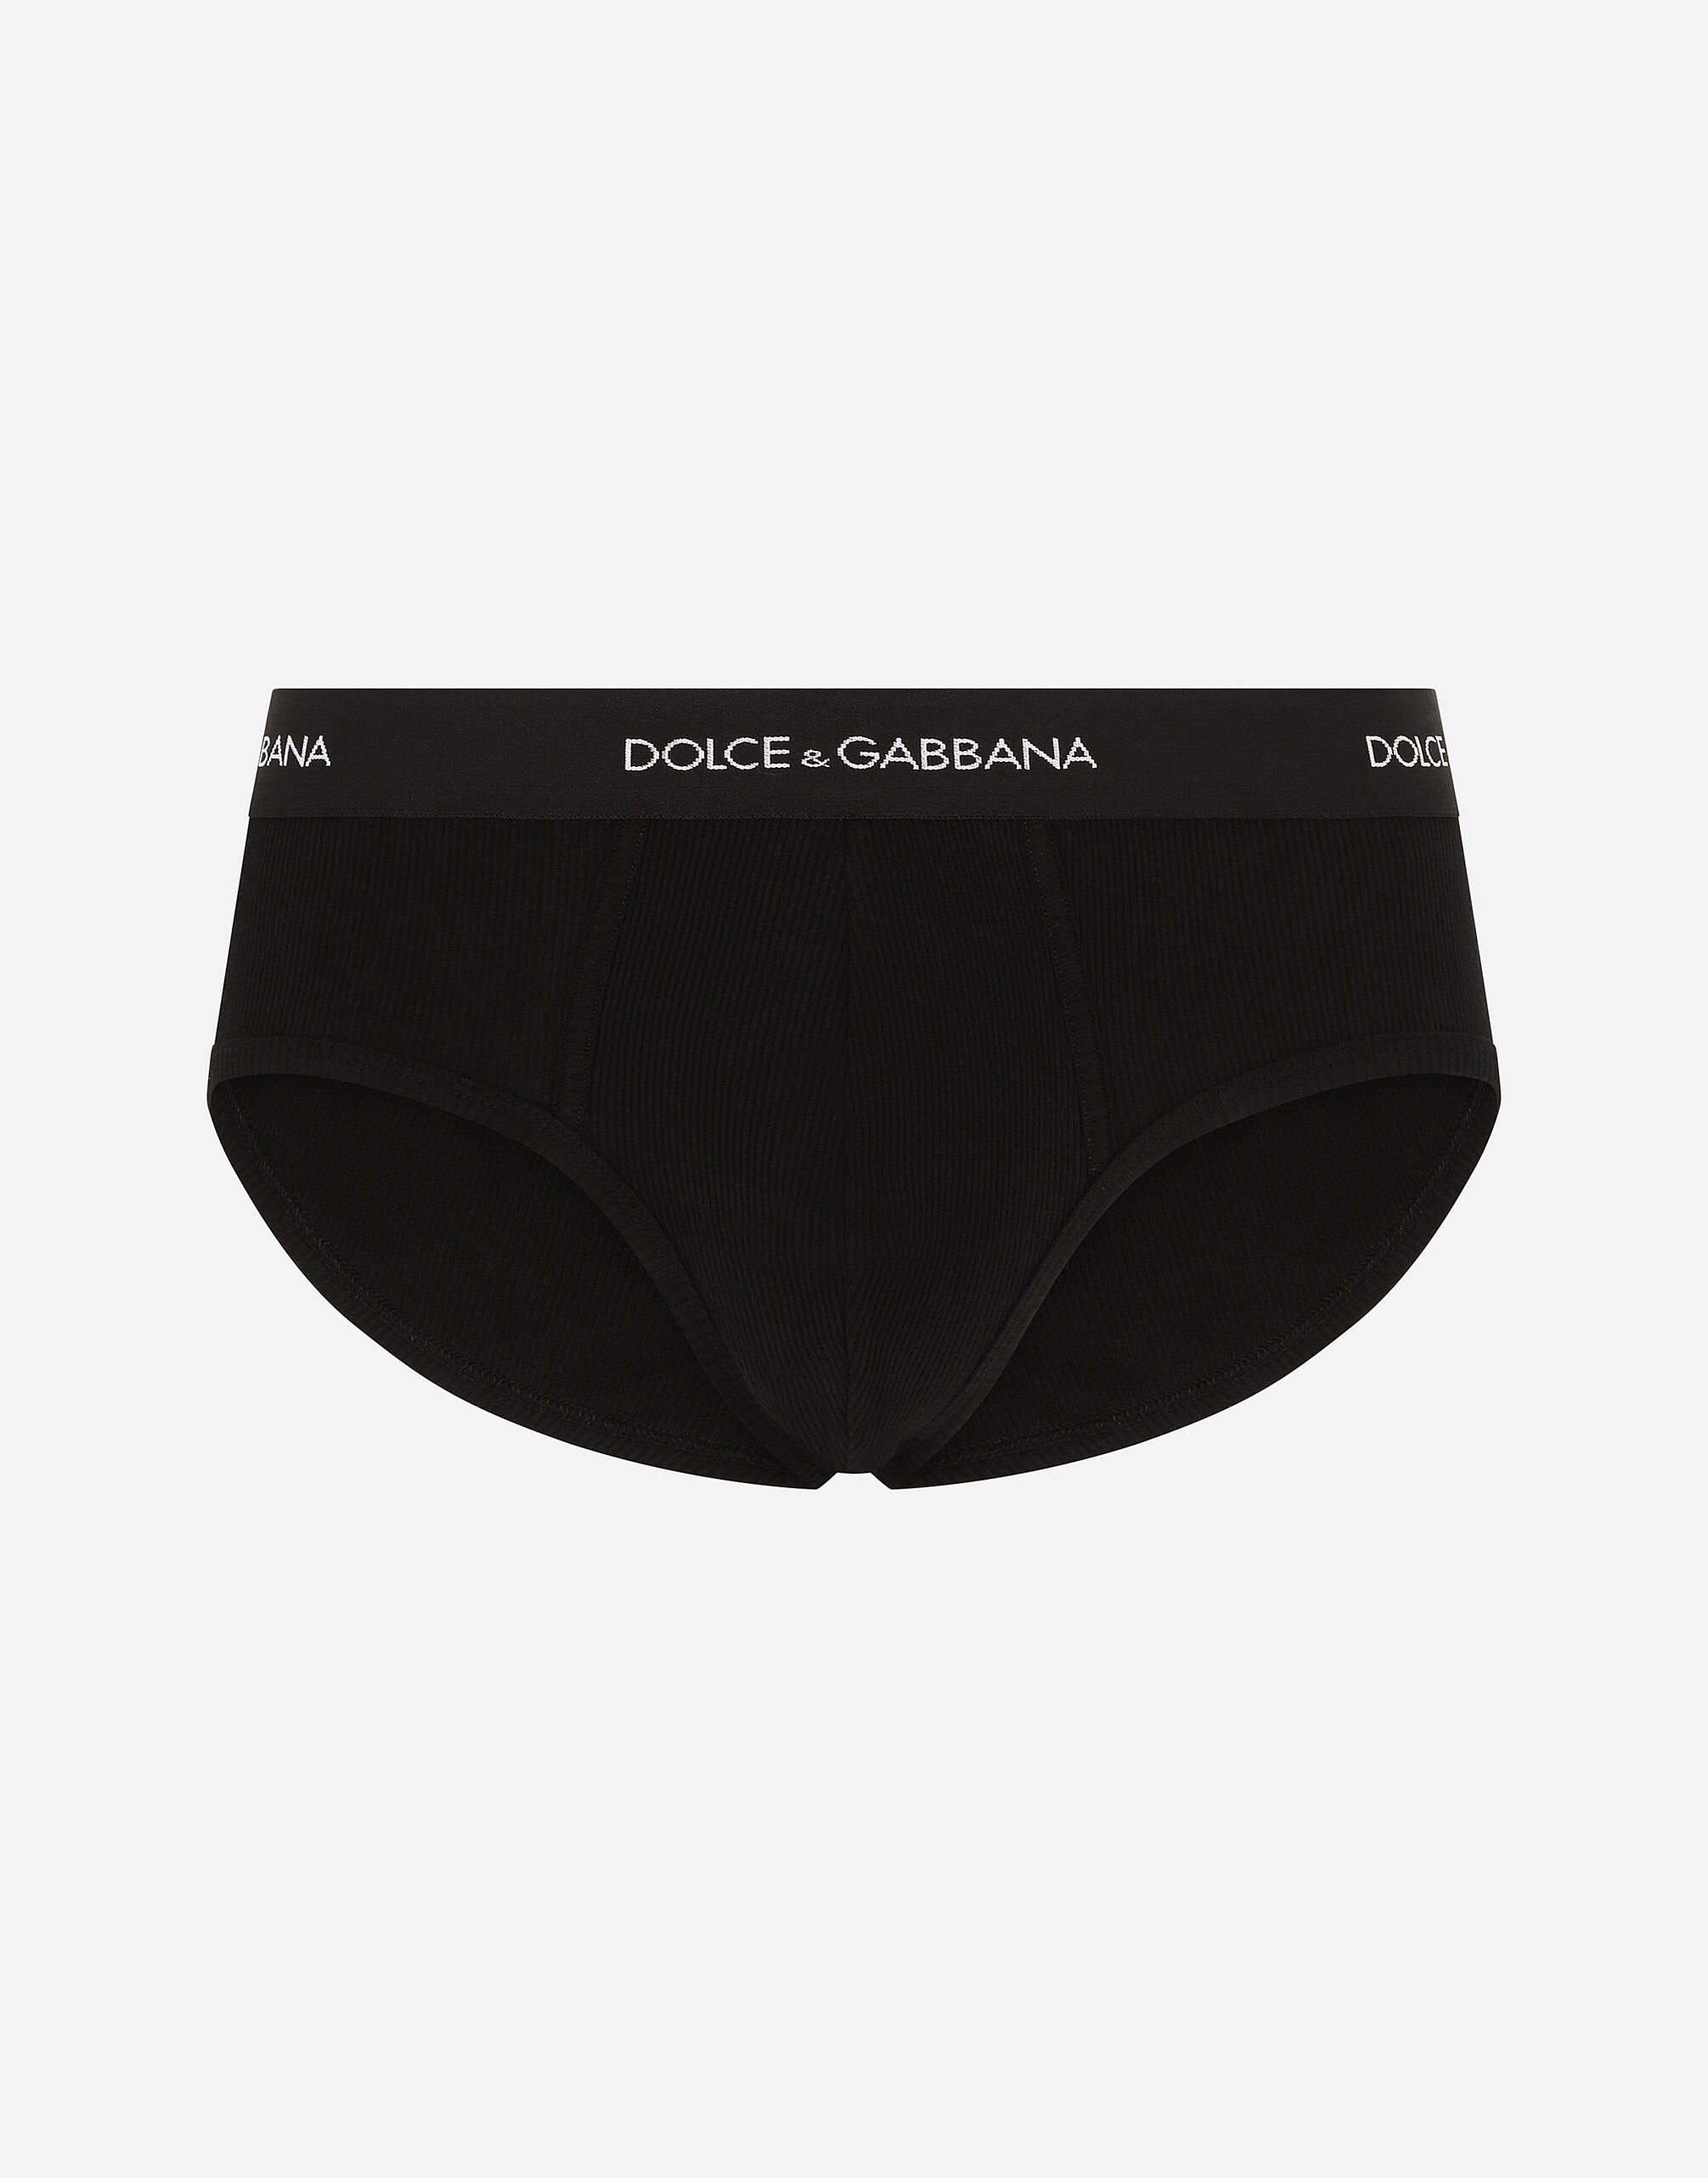 Dolce & Gabbana Brando 细罗纹棉质三角内裤 黑 M9C03JONN95